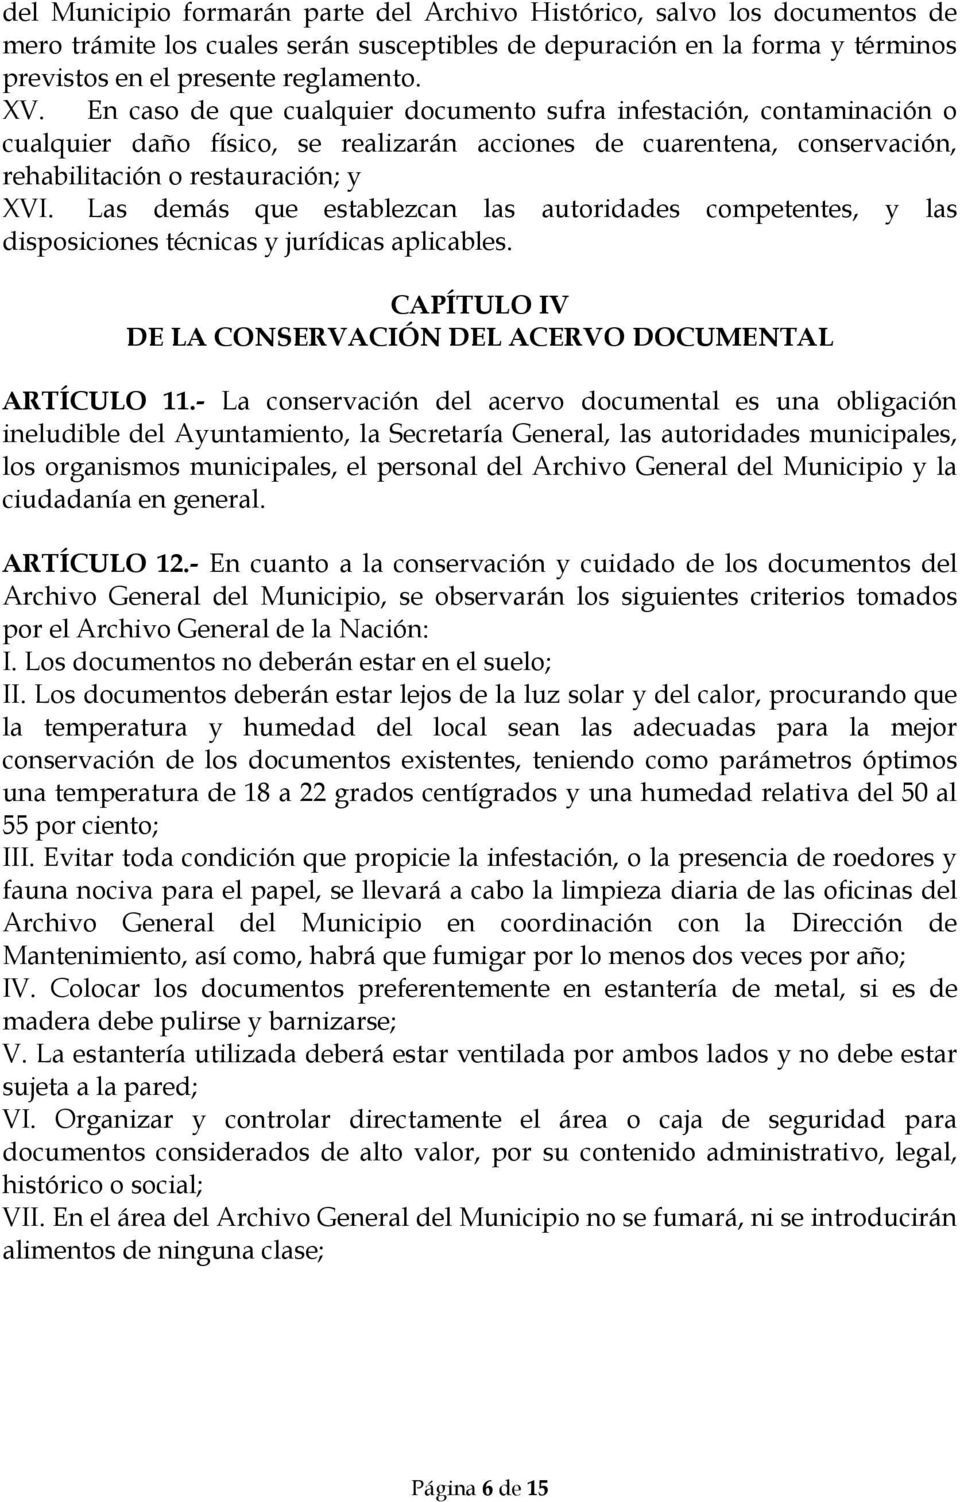 Las demás que establezcan las autoridades competentes, y las disposiciones técnicas y jurídicas aplicables. CAPÍTULO IV DE LA CONSERVACIÓN DEL ACERVO DOCUMENTAL ARTÍCULO 11.